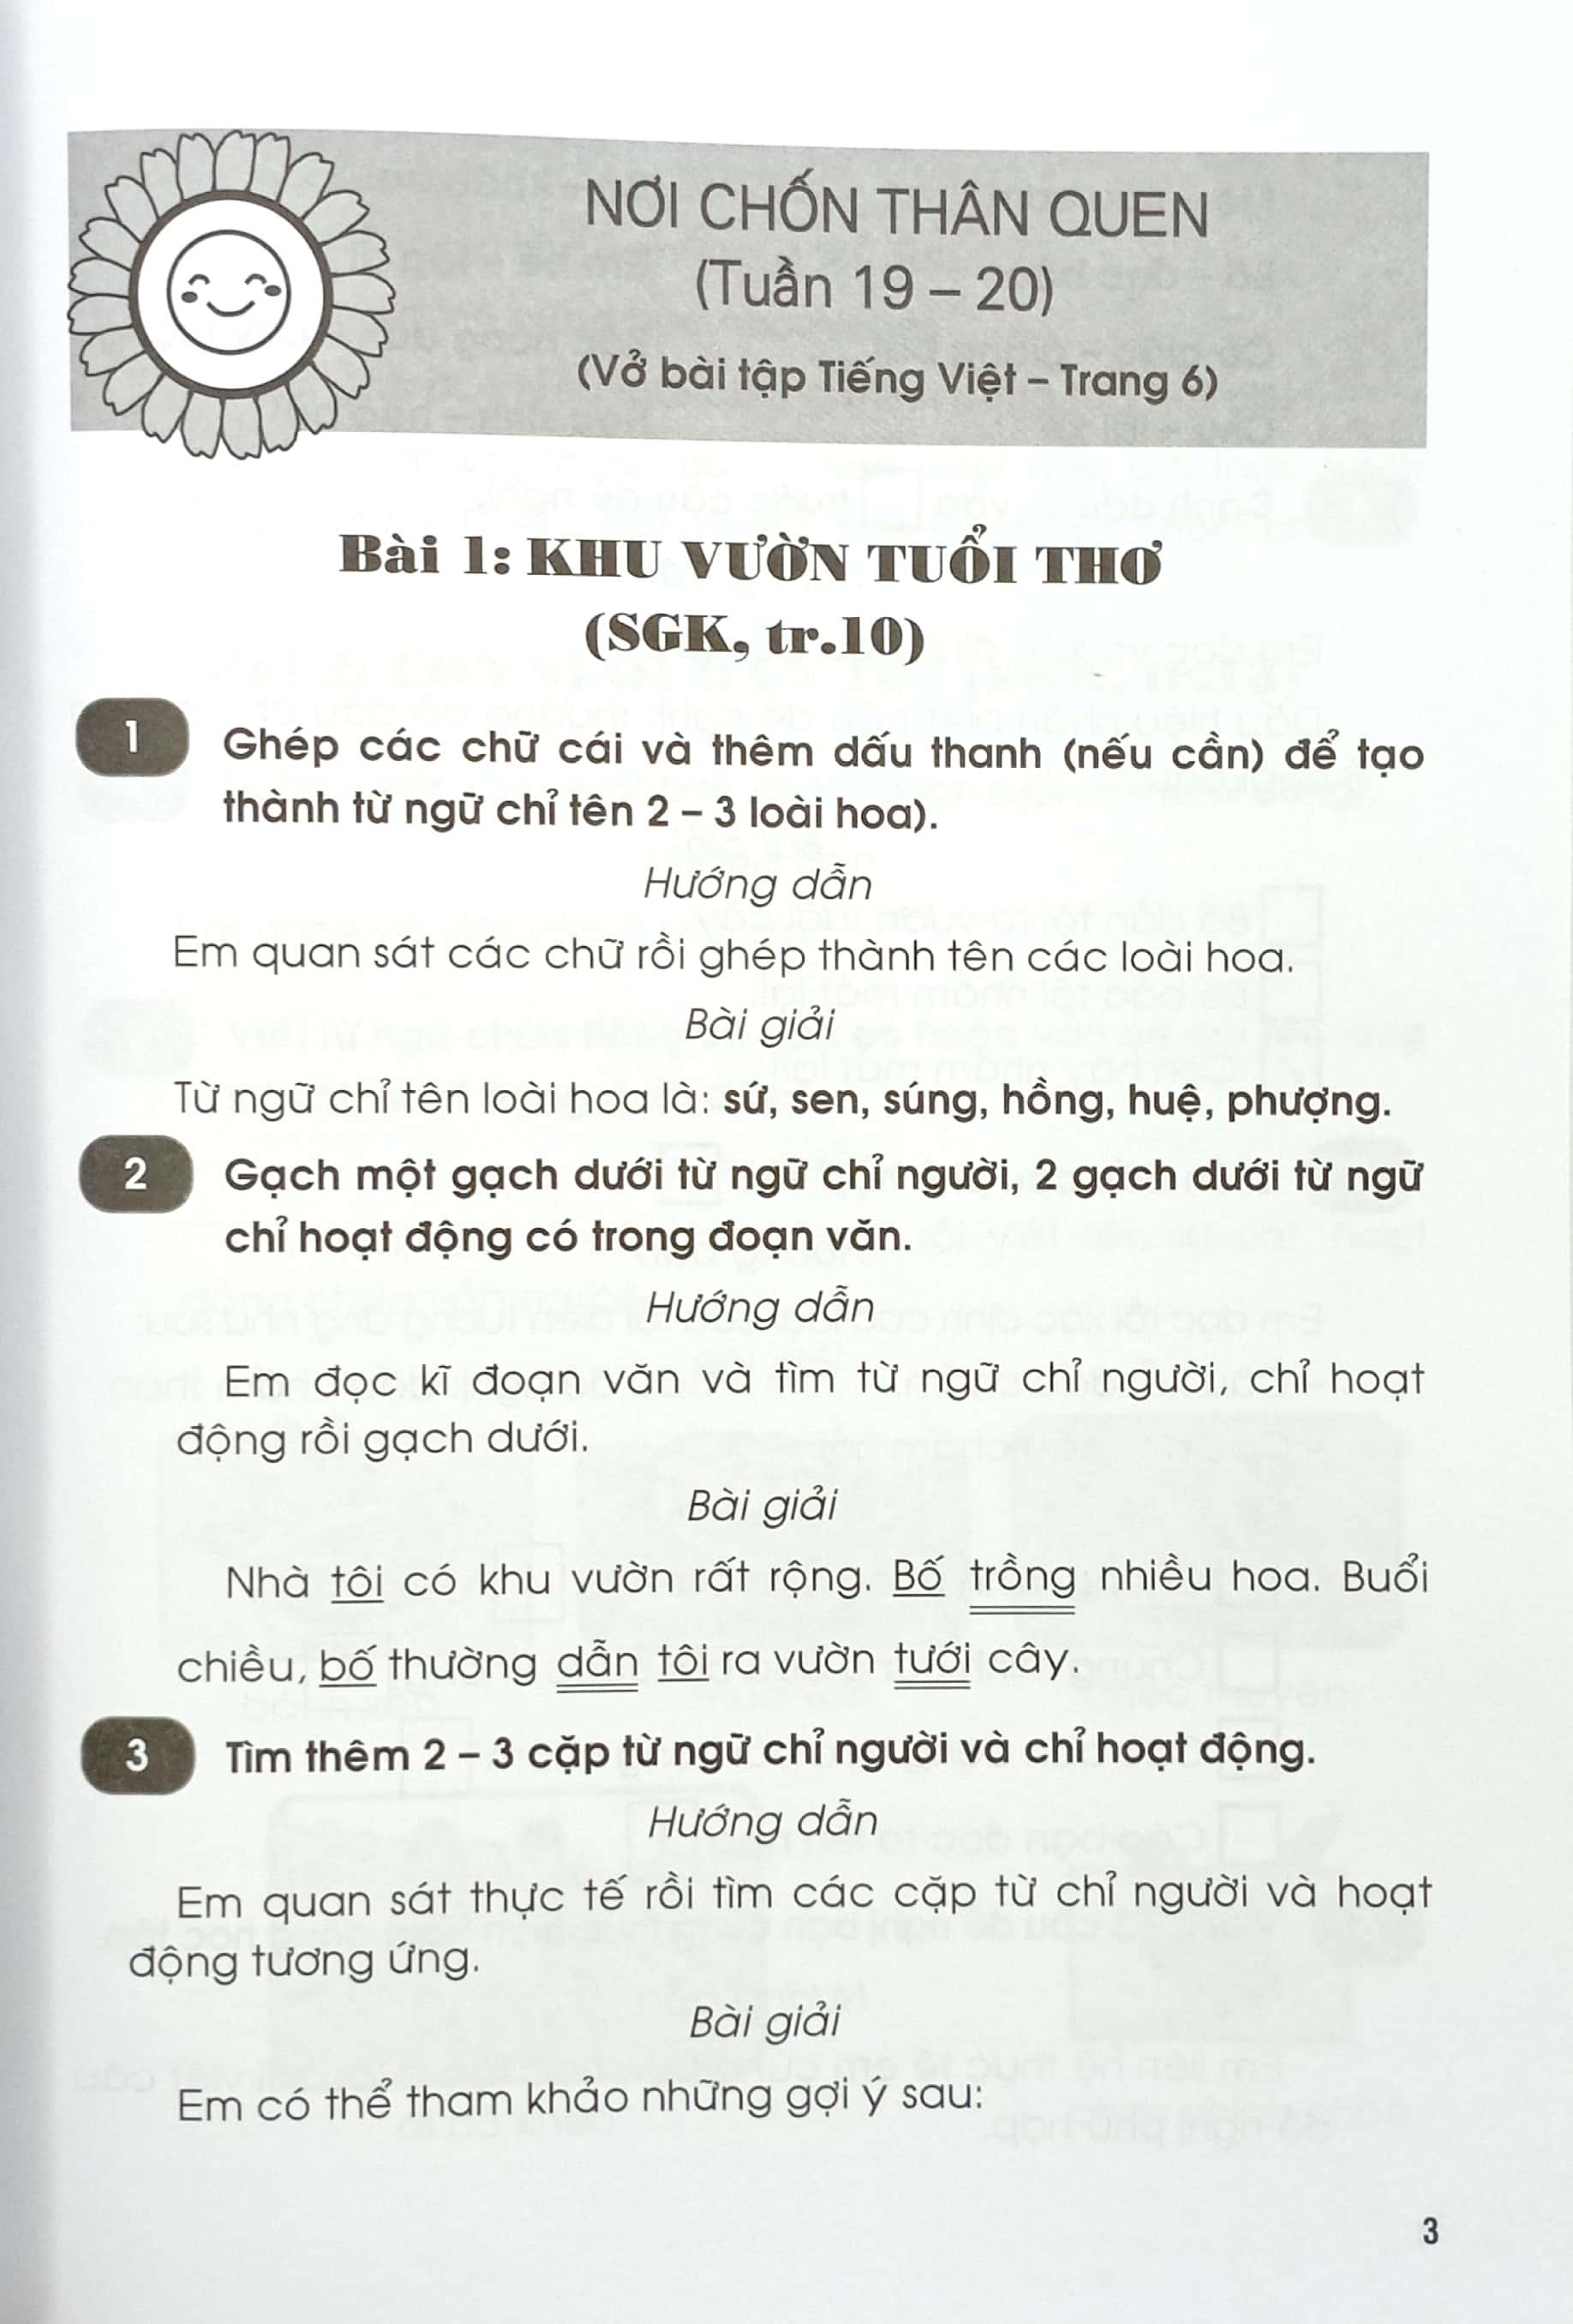 Giải Vở Bài Tập Tiếng Việt Lớp 2 - Tập 2 (Chân Trời Sáng Tạo) (2022)